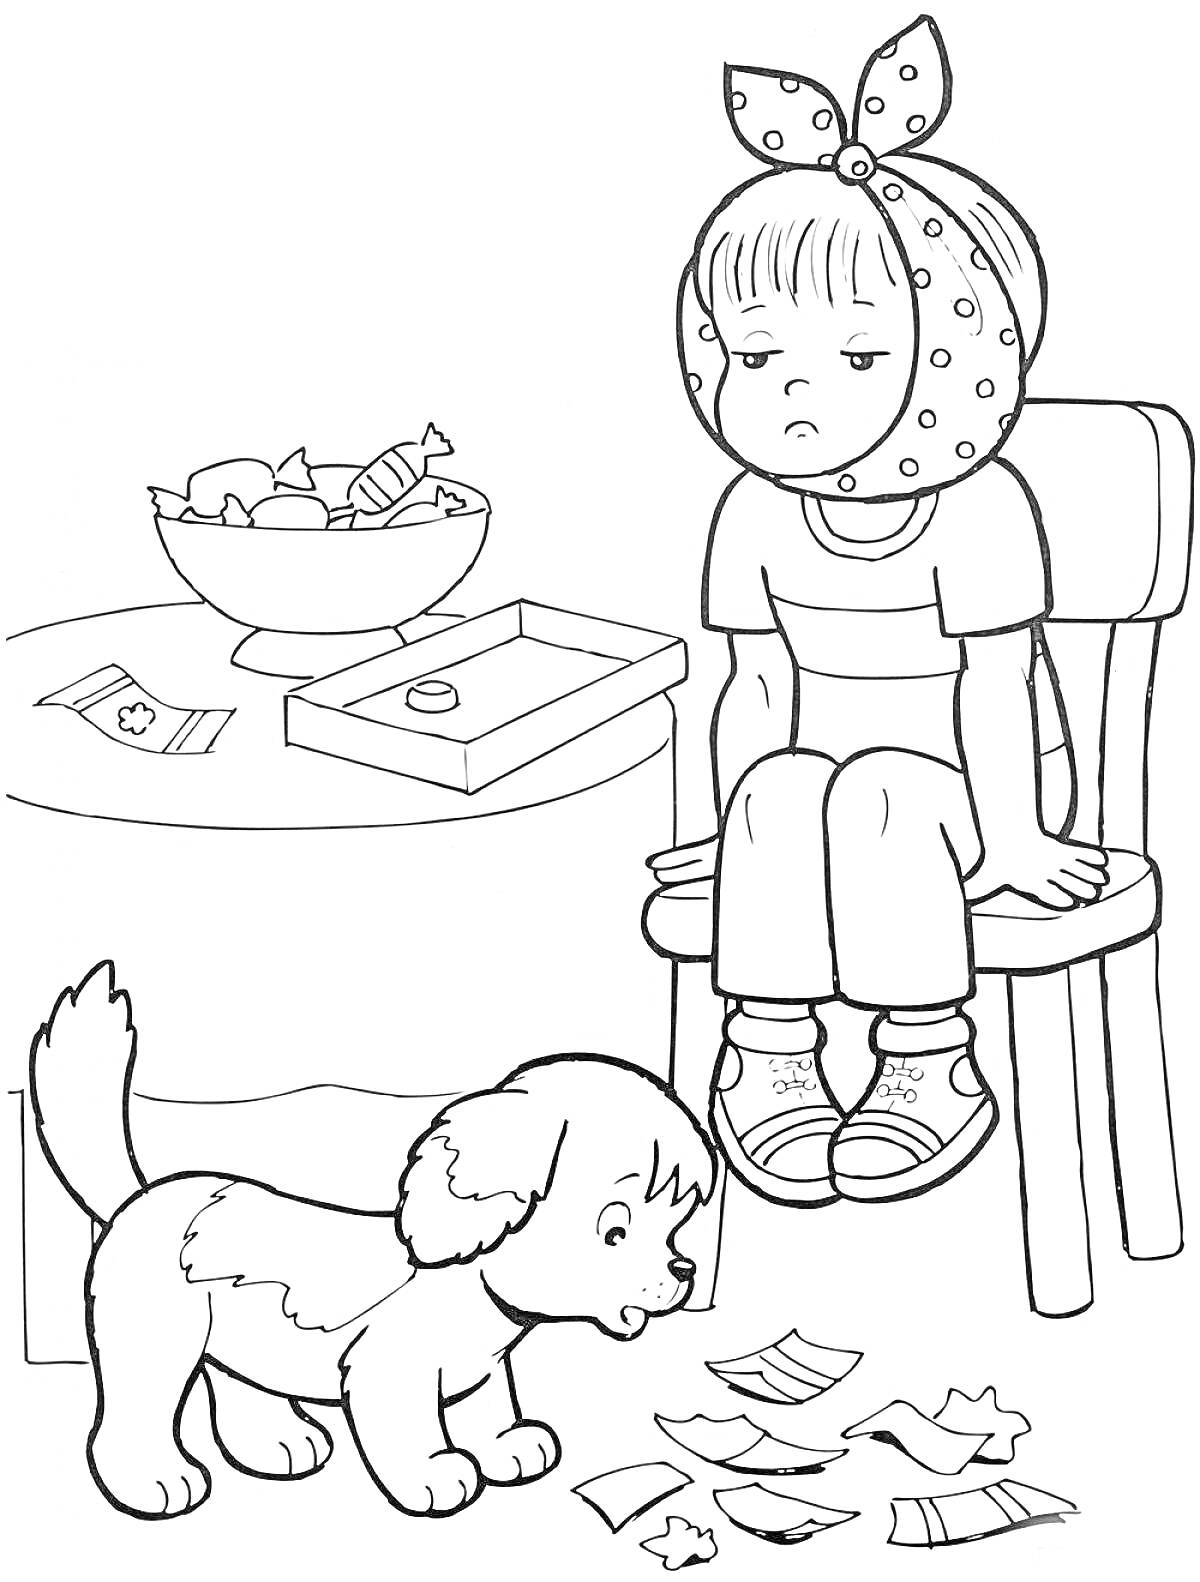 Раскраска Девочка на стуле с повязкой на голове, стол с лекарствами и конфетами, щенок на полу